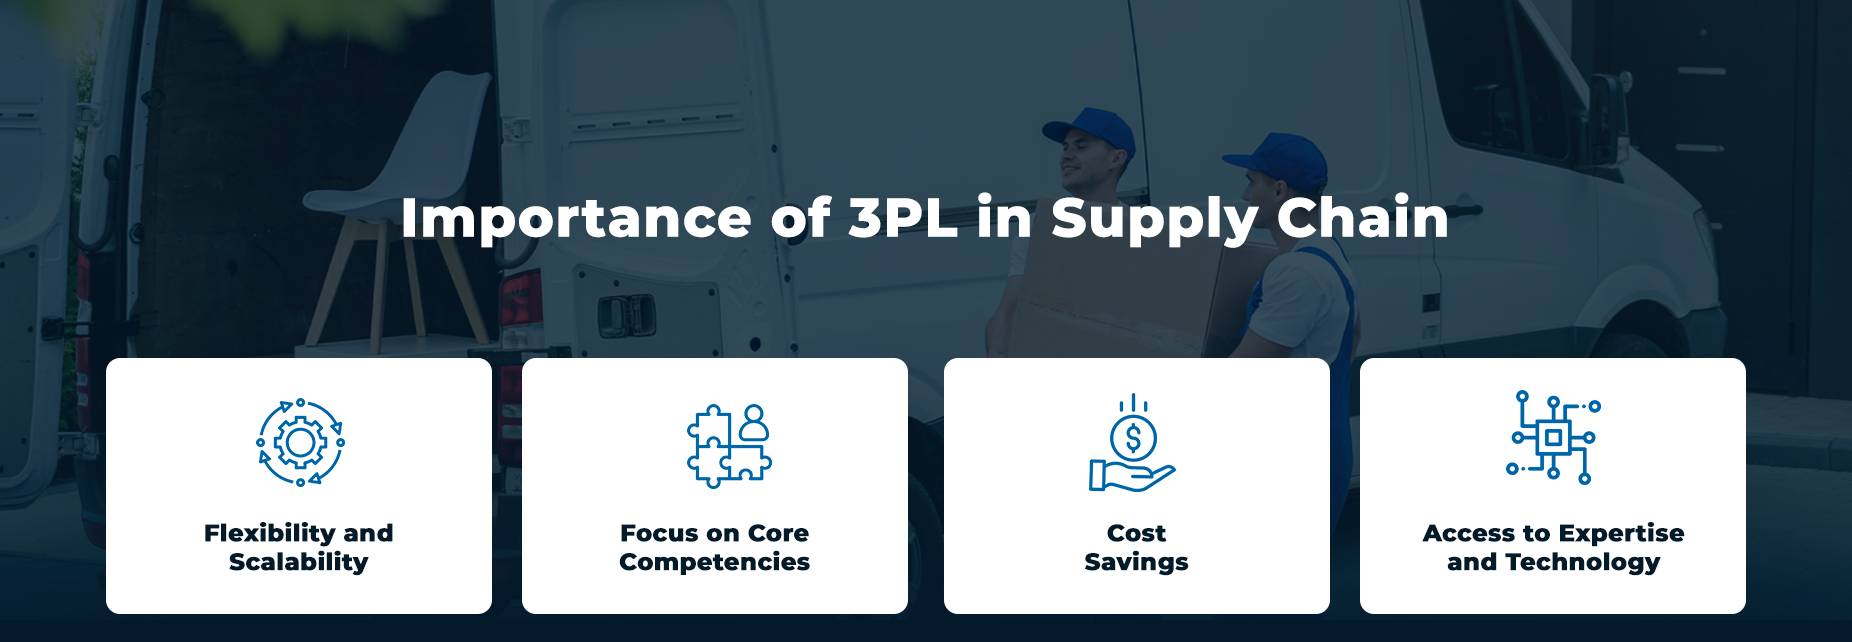 Het belang van 3PL in de supply chain